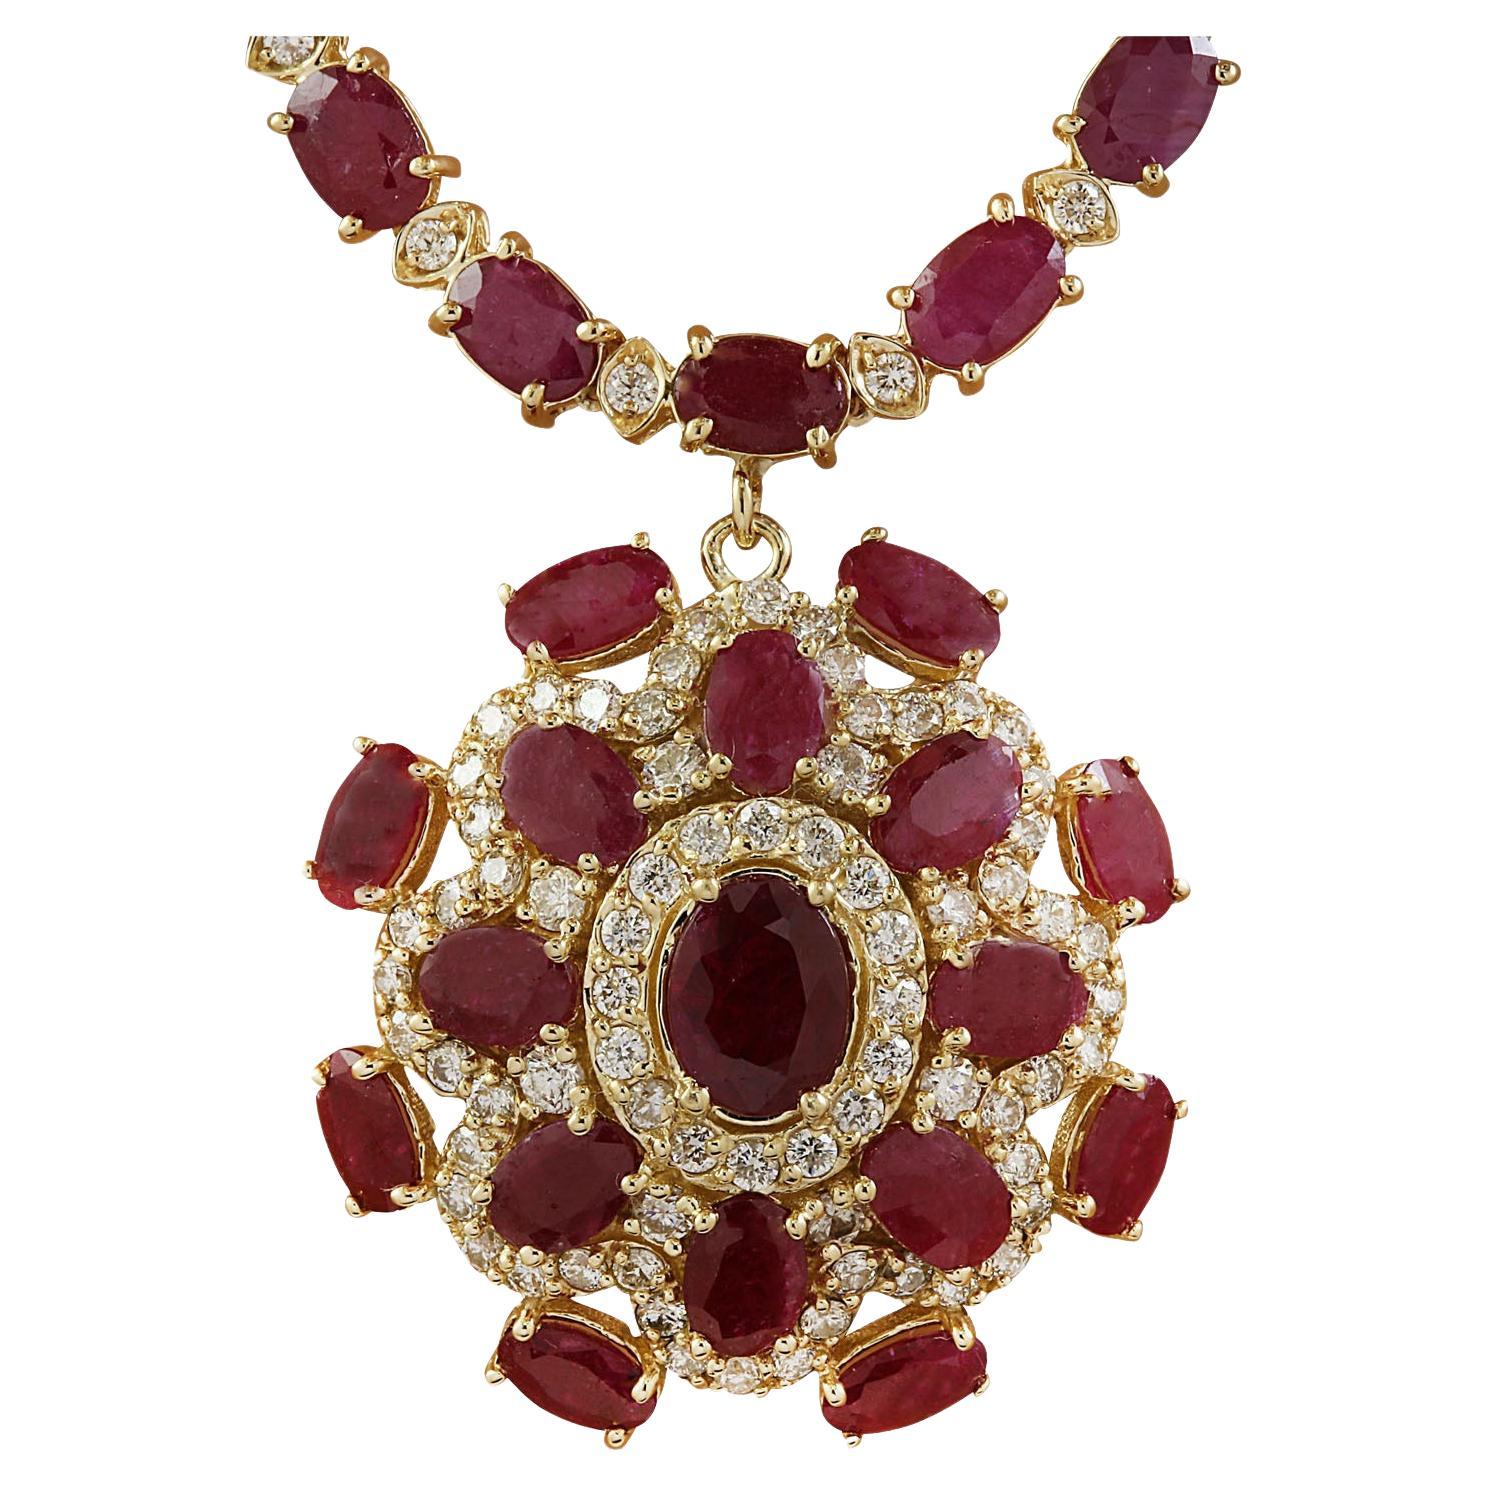 Natürliche Rubin-Diamant-Halskette aus massivem 14 Karat Gelbgold 